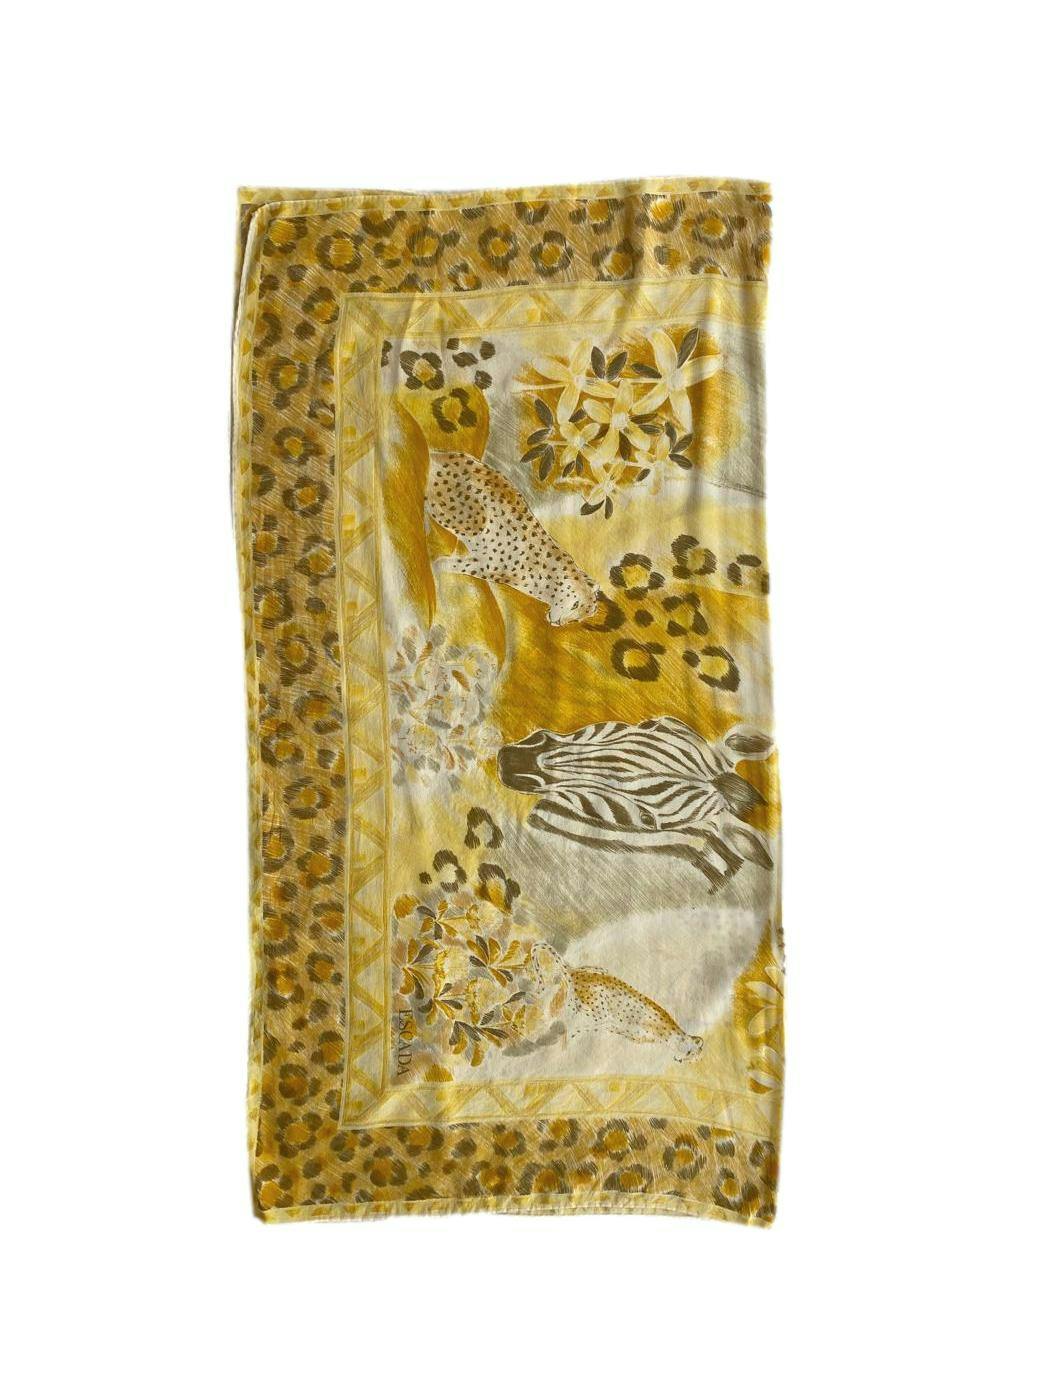 Pañuelo Escada amarillo animal print. Ancho 88cm. Alto 88cm. Costo original 300 USD.